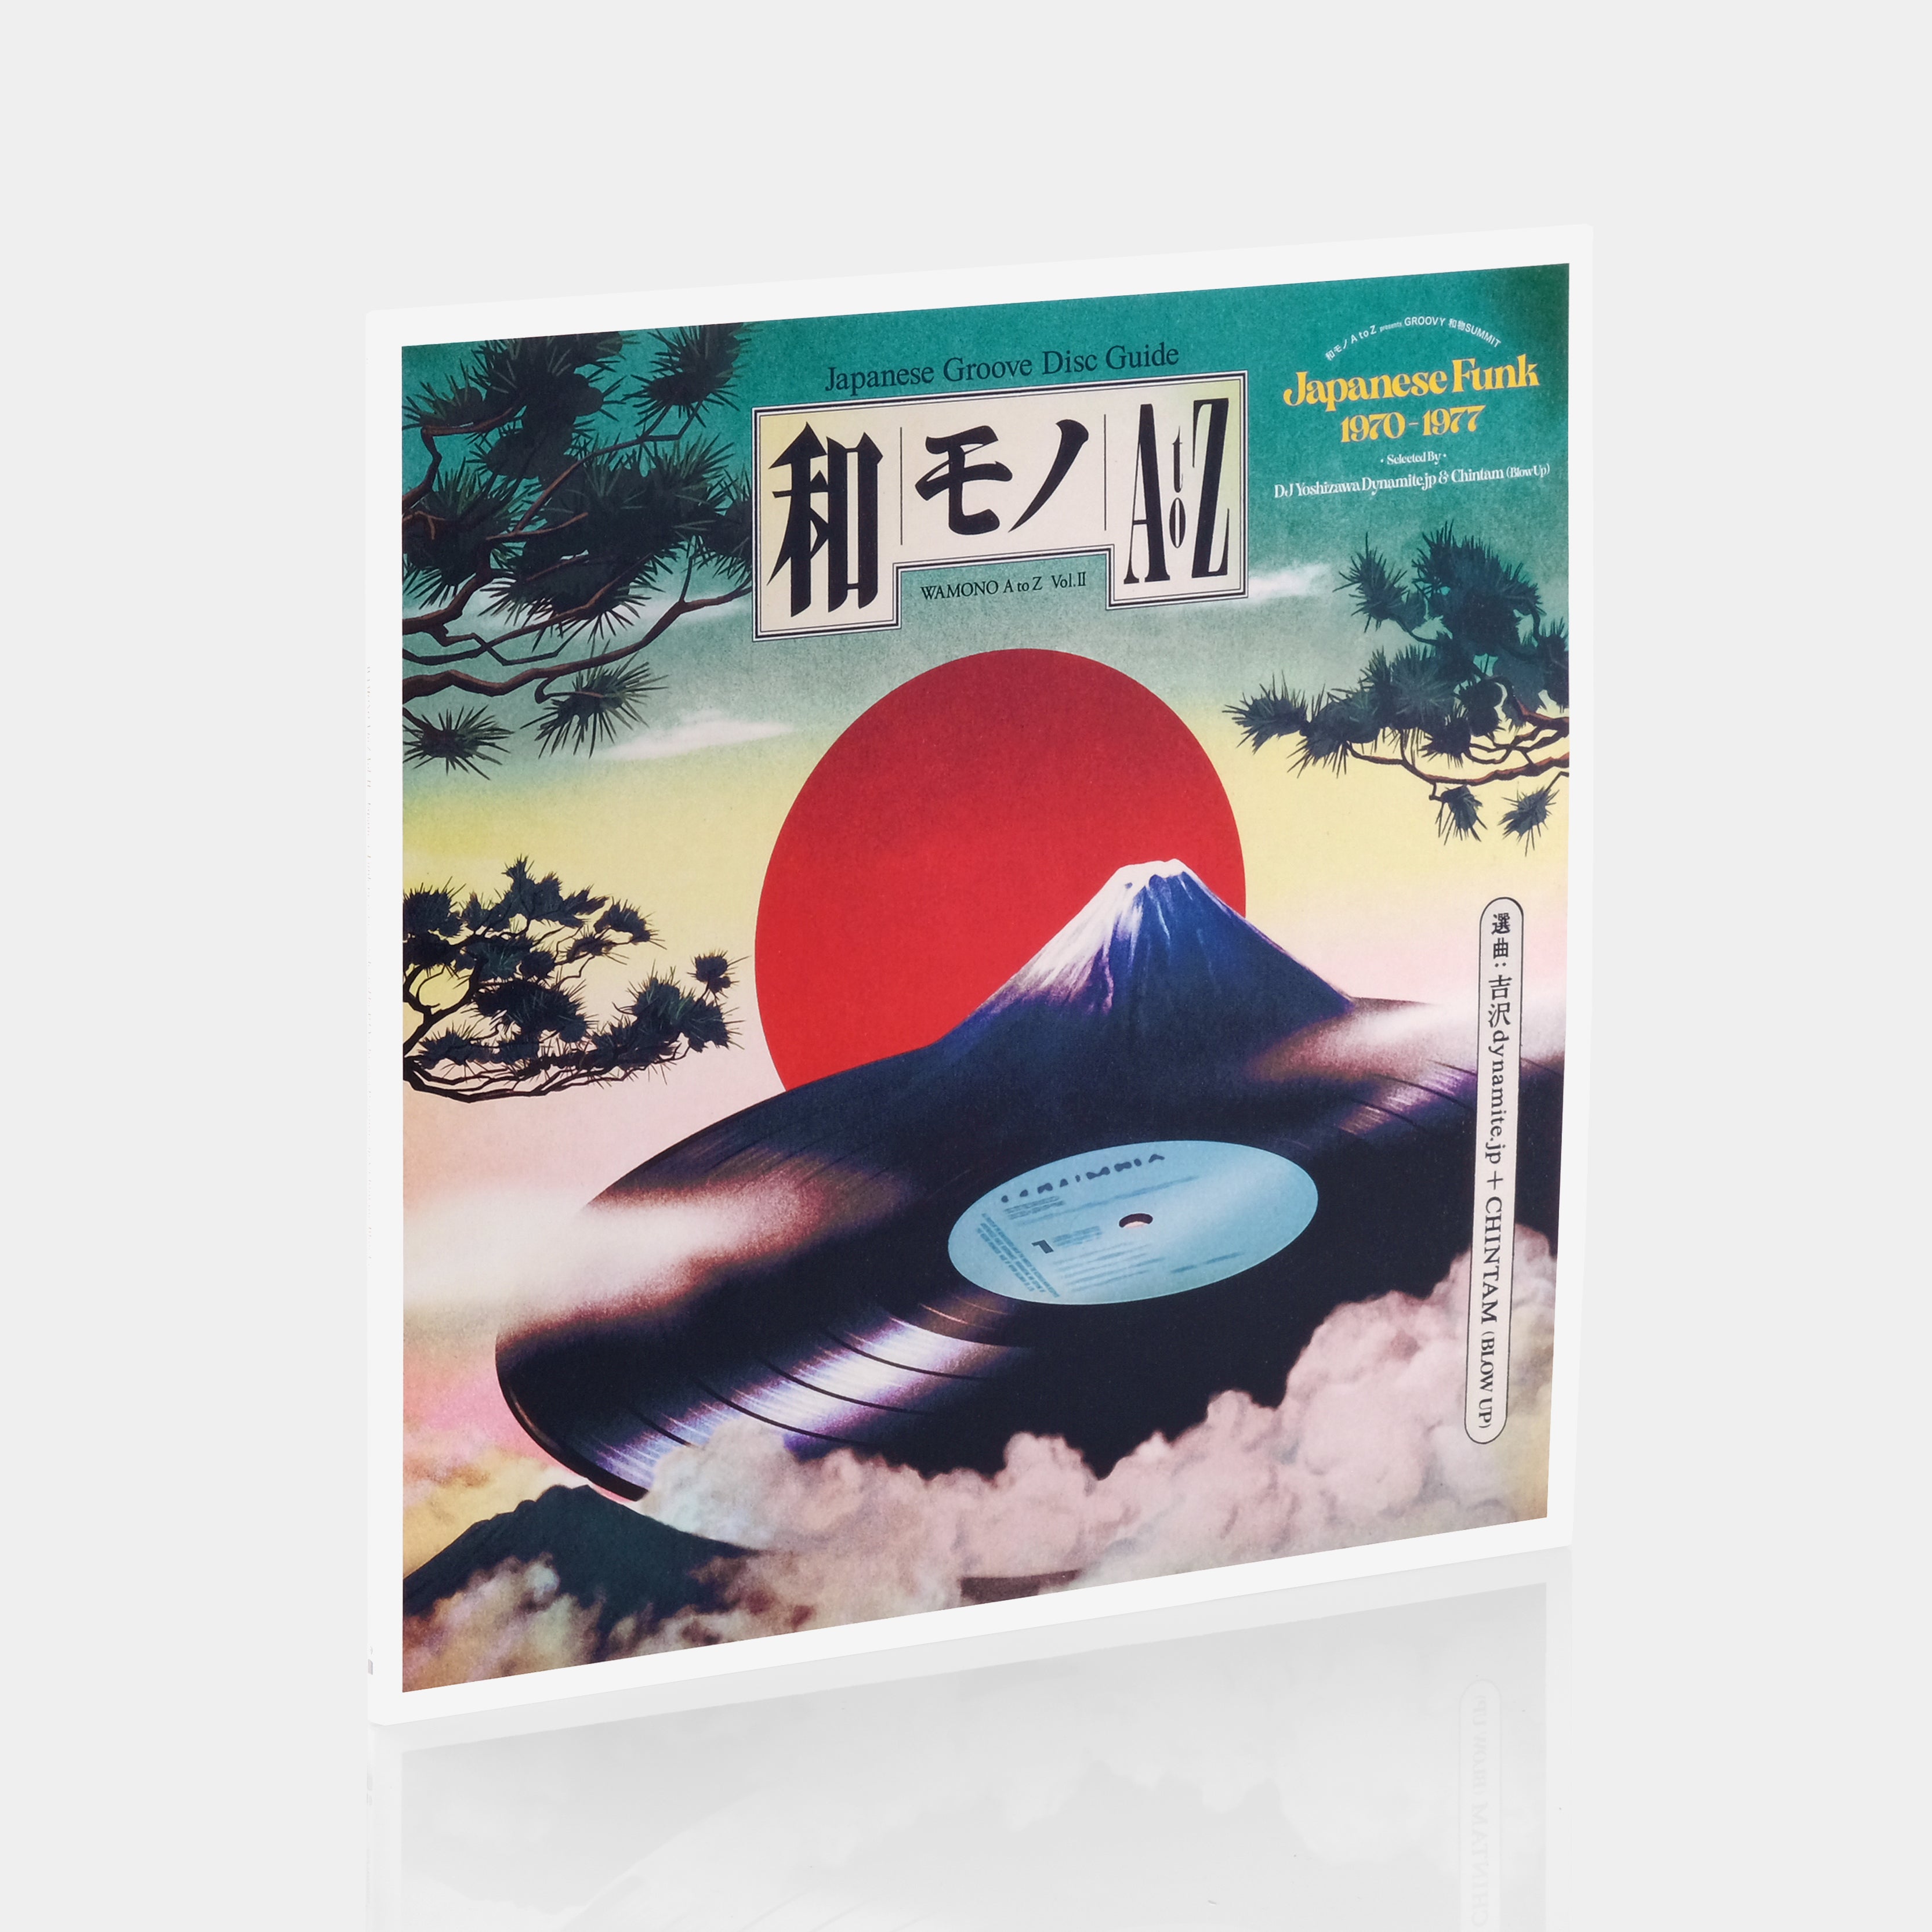 WAMONO A to Z Vol. II: Japanese Funk 1970-1977 LP Vinyl Record